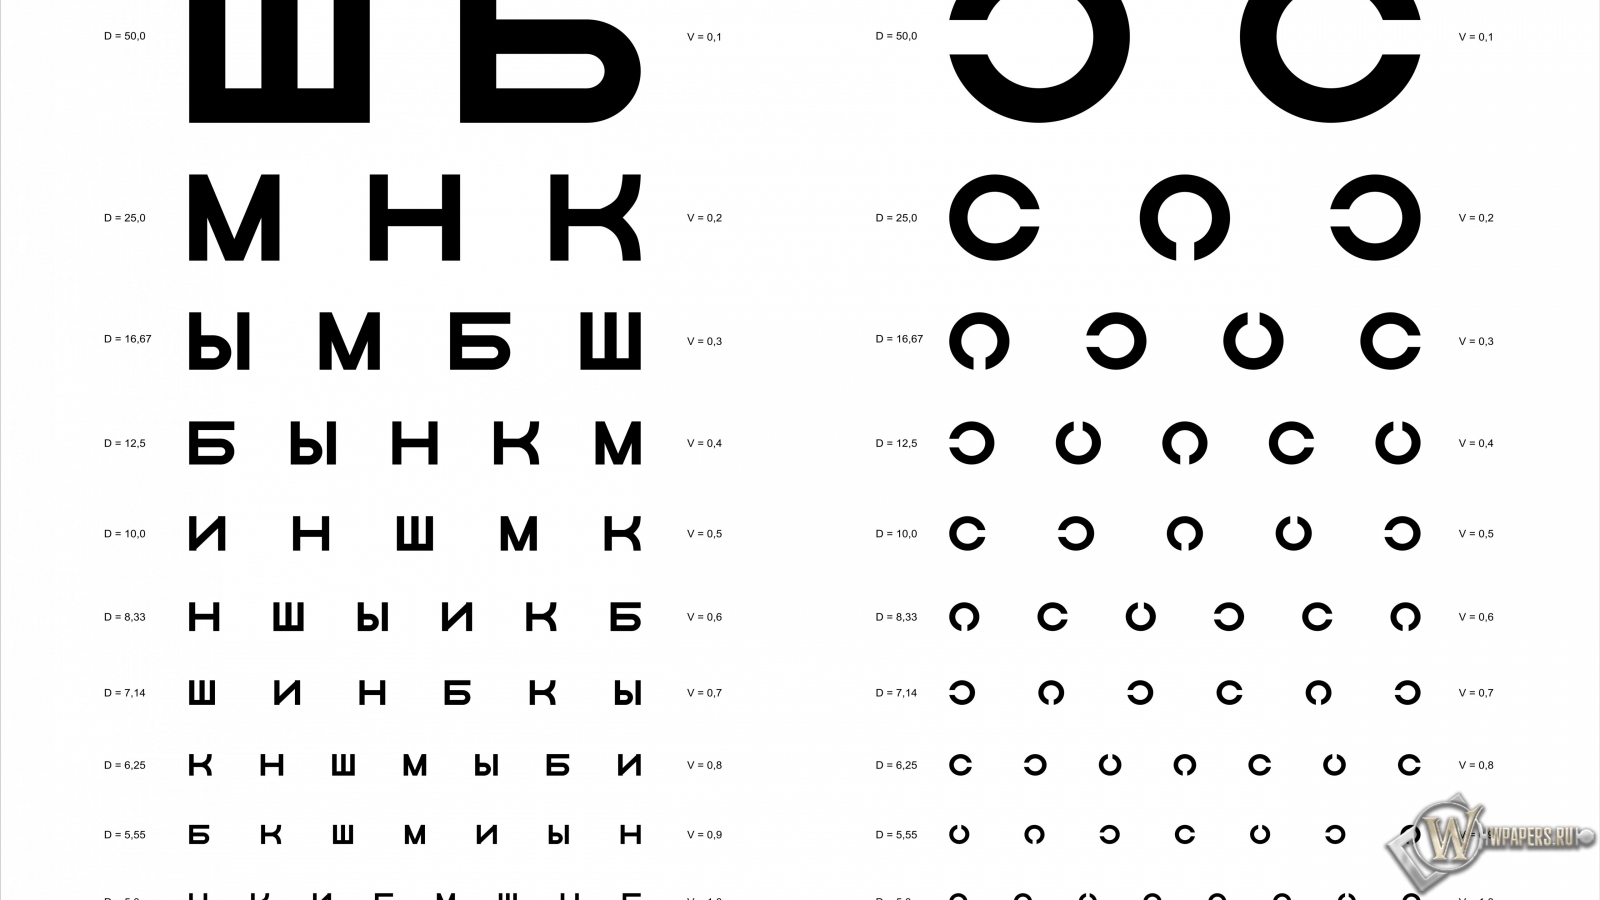 Таблица Д.А. Сивцева для проверки зрения 1600x900